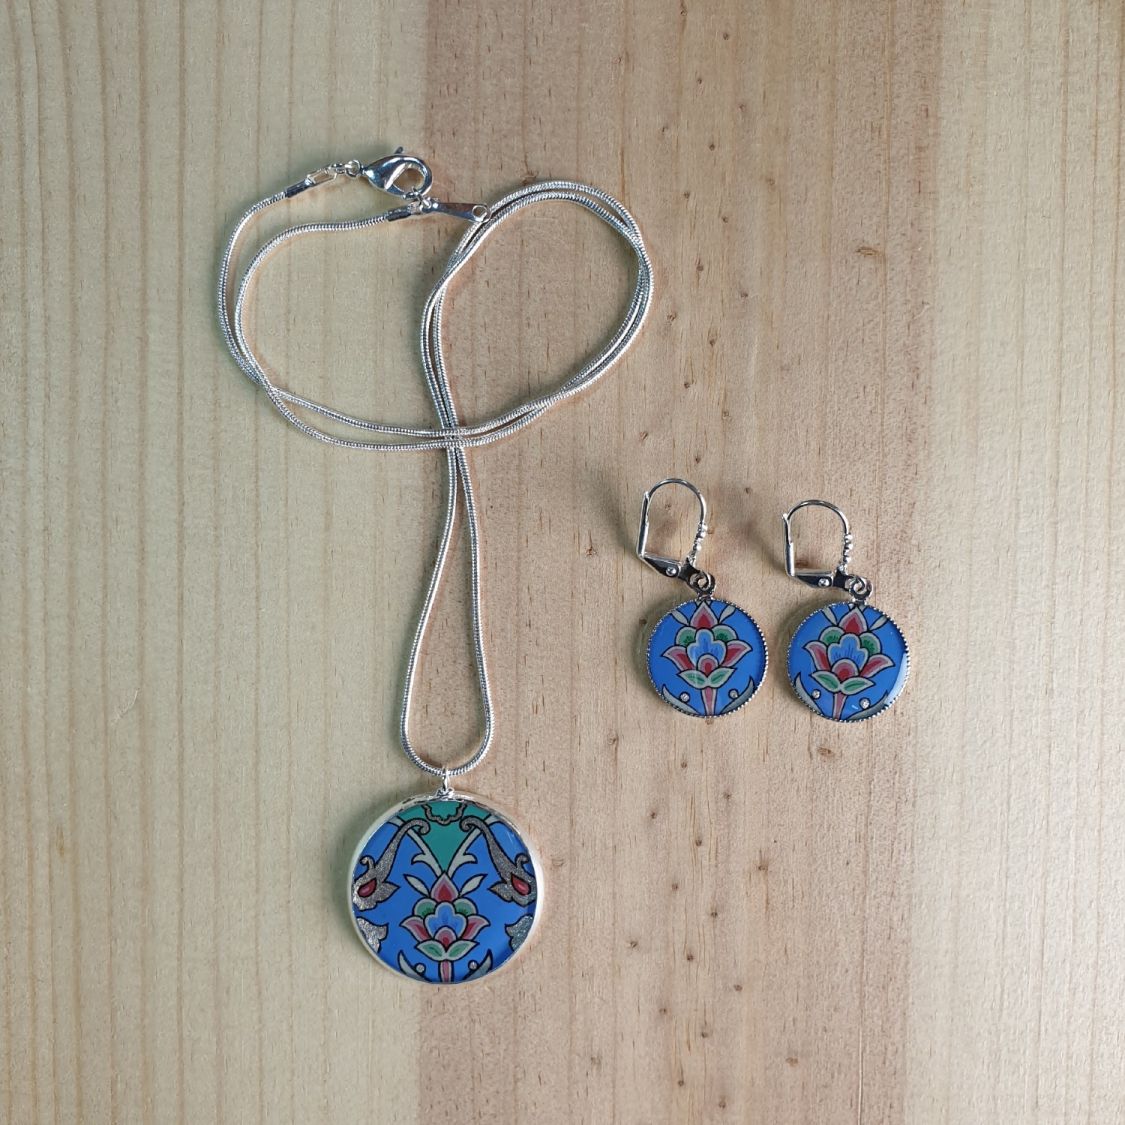 Boucles d'oreille pendantes enluminées fleur et arabesques bleu/argenté/vert/rosé